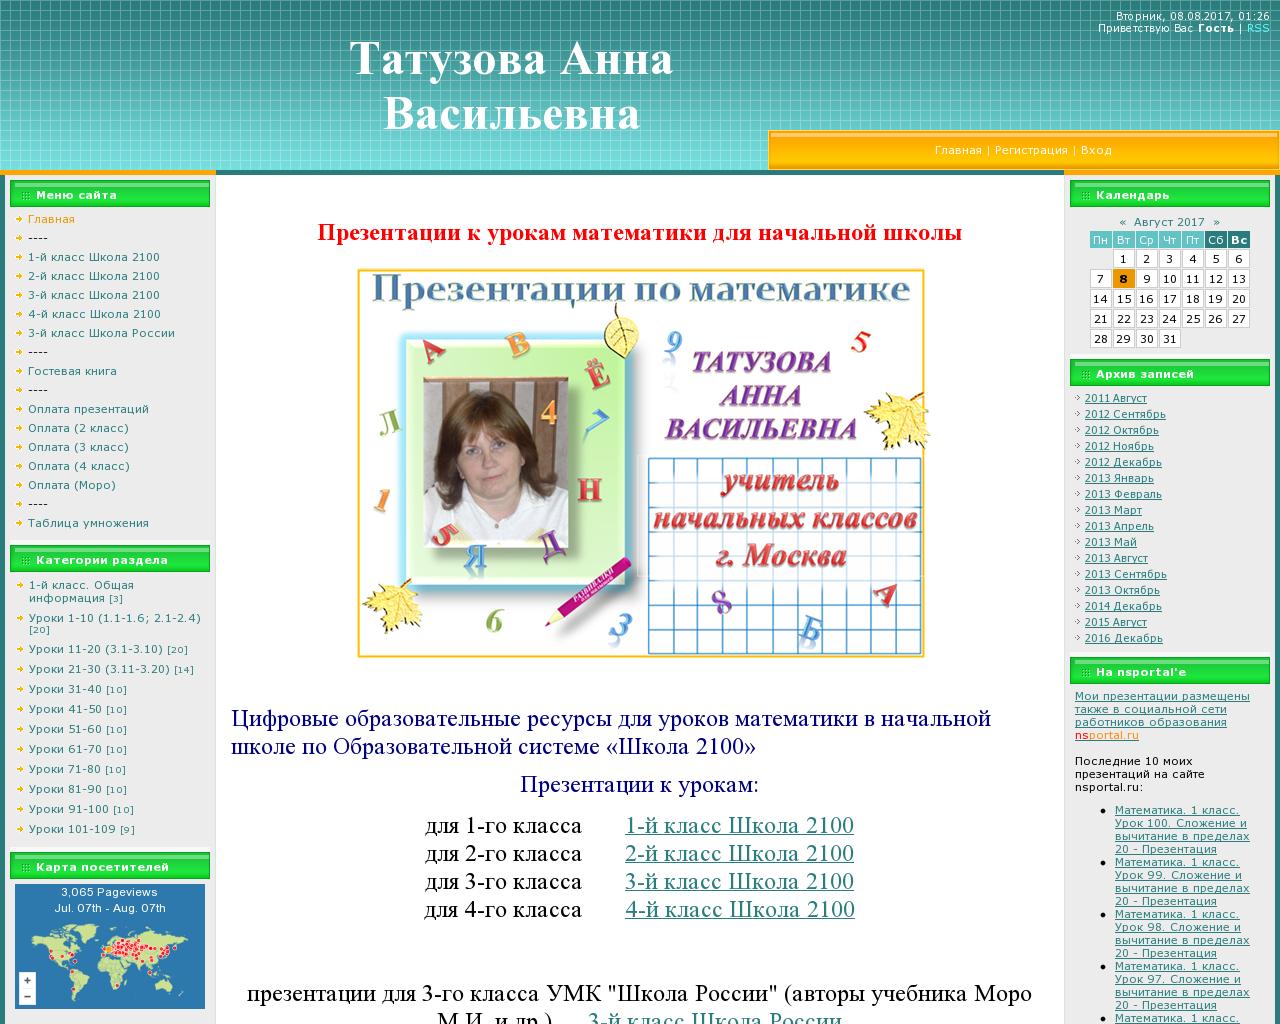 Изображение сайта avtatuzova.ru в разрешении 1280x1024